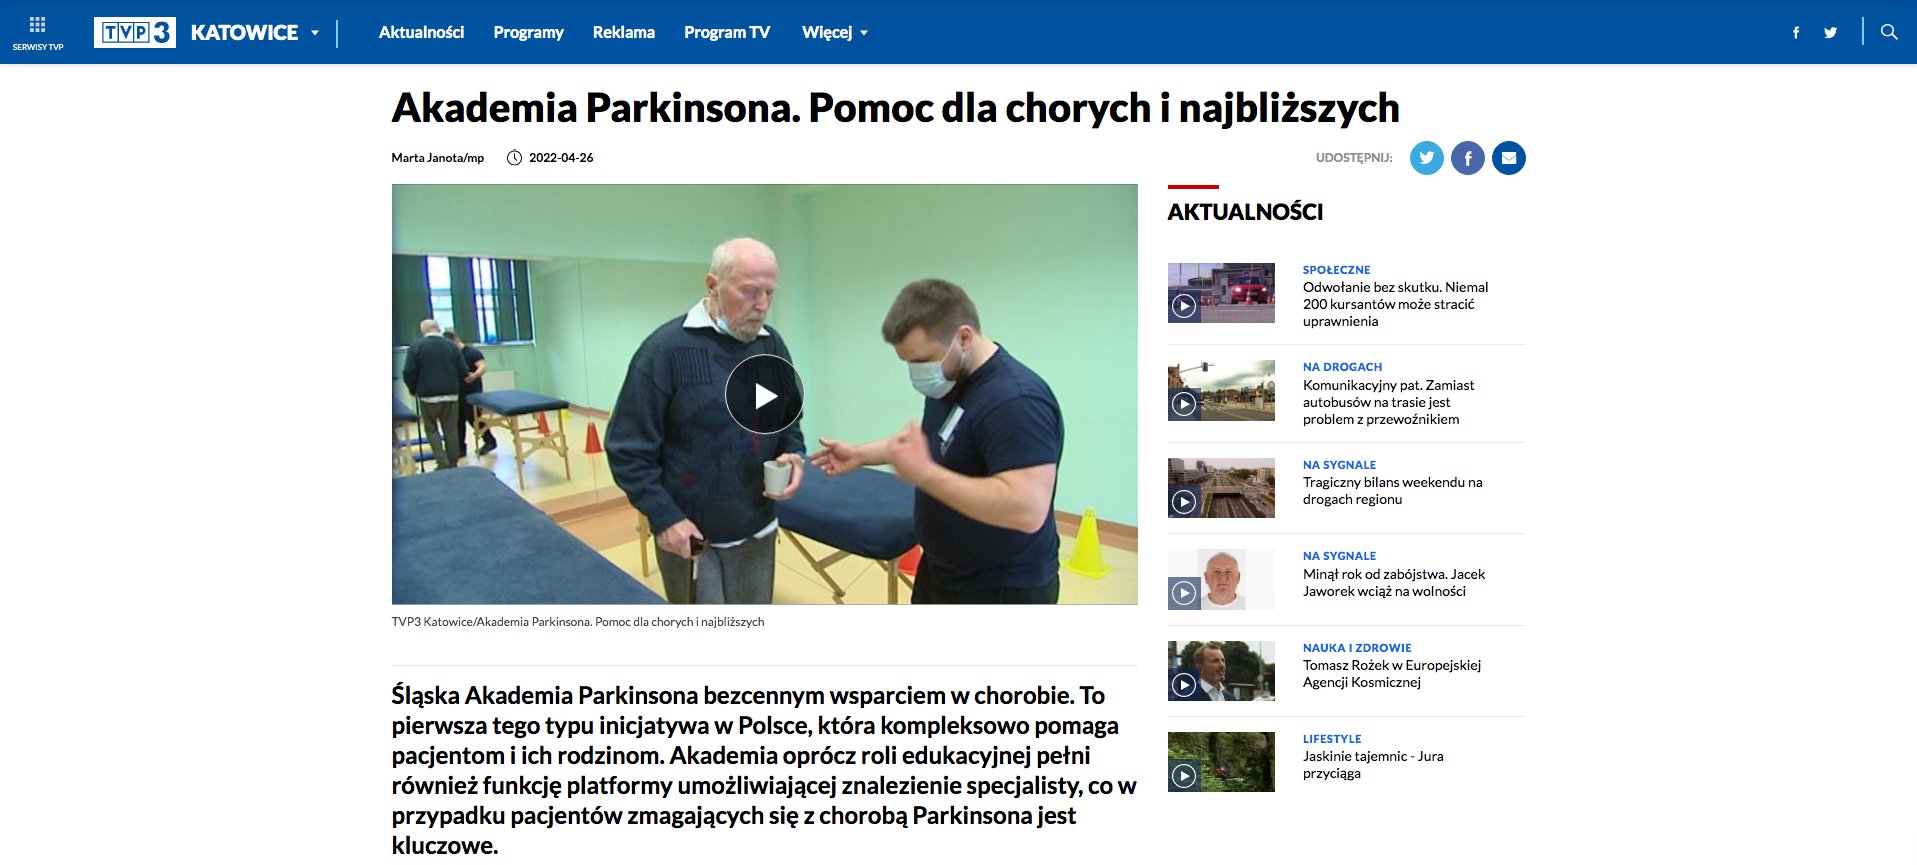 TVP 3 KATOWICE - "Akademia Parkinsona. Pomoc dla chorych i najbliższych"